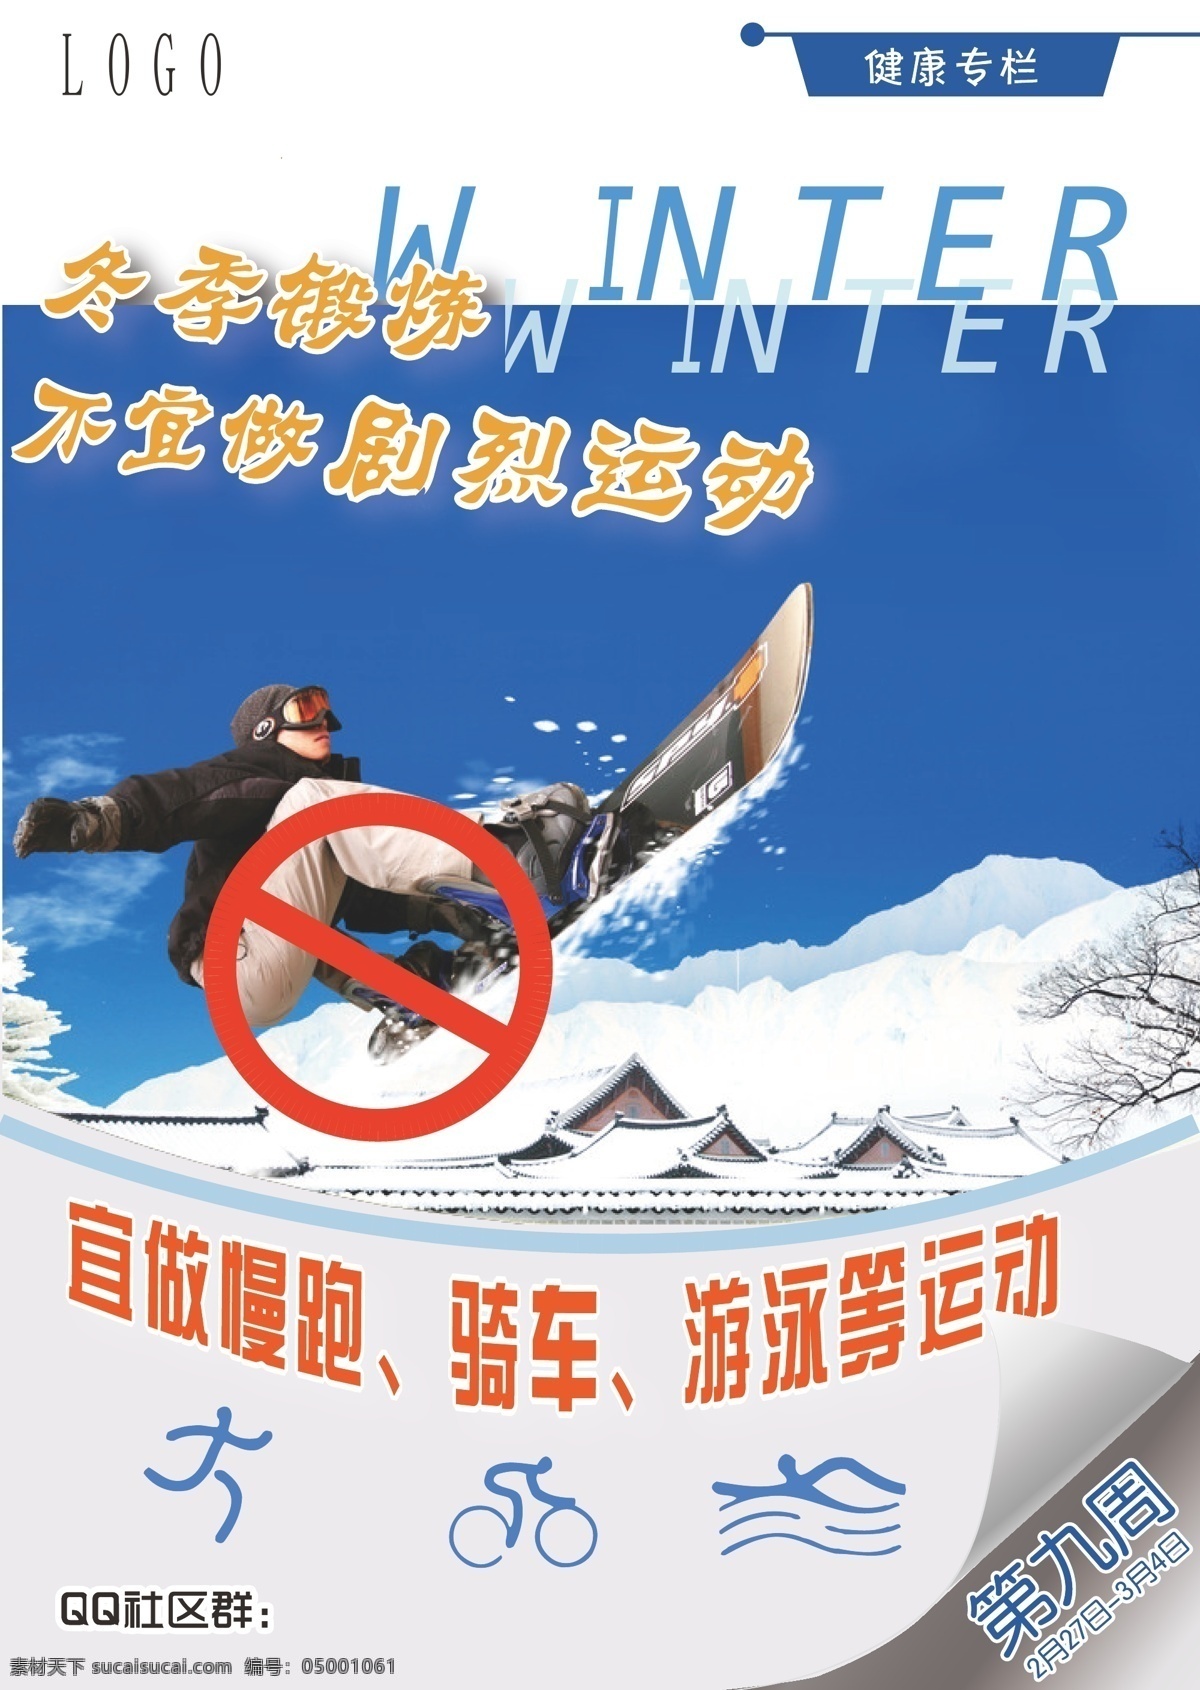 冬季 锻炼 冬天 滑雪 健康专栏 禁止 蓝色 骑车 雪 冬季锻炼 不易 做 剧烈 运动 慢跑 游泳 矢量 其他海报设计